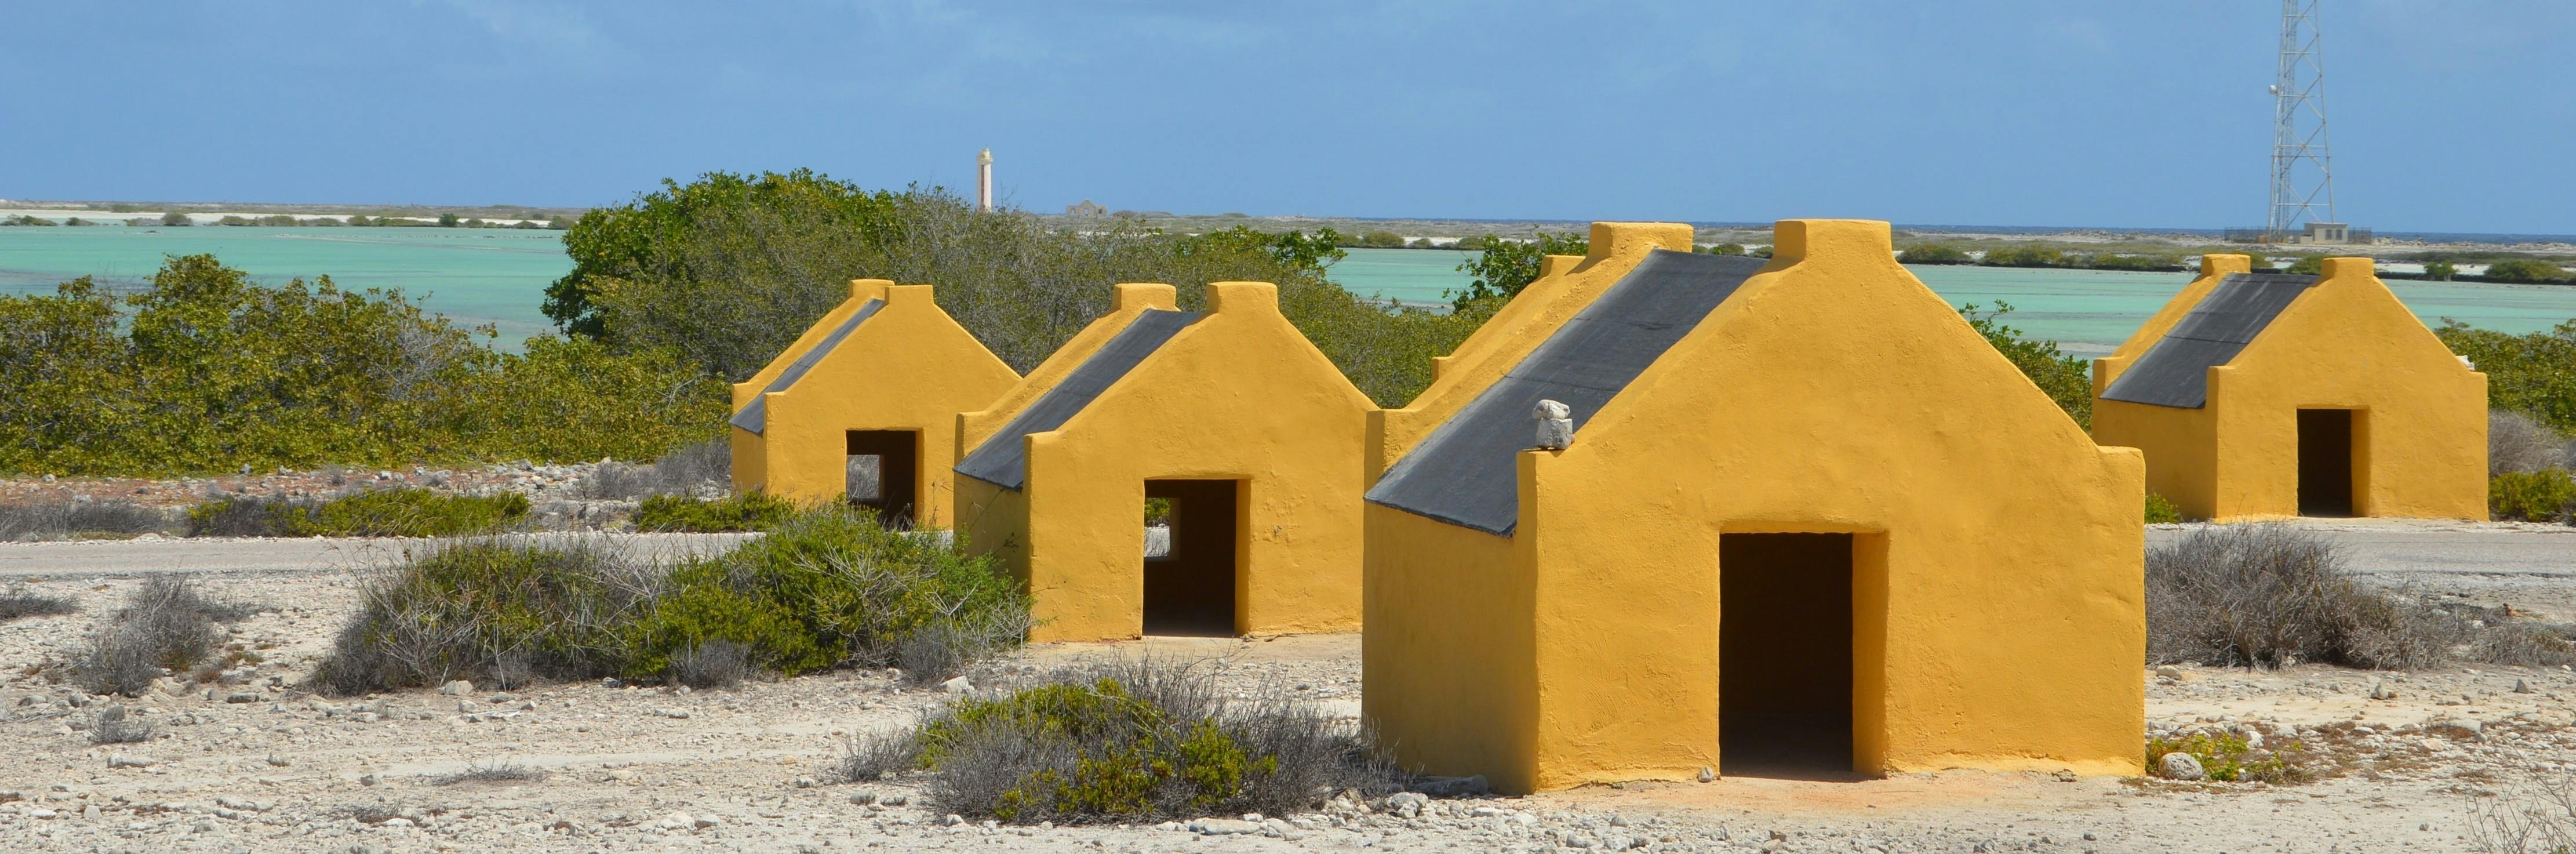 Scopri Bonaire in un tour guidato dell'isola